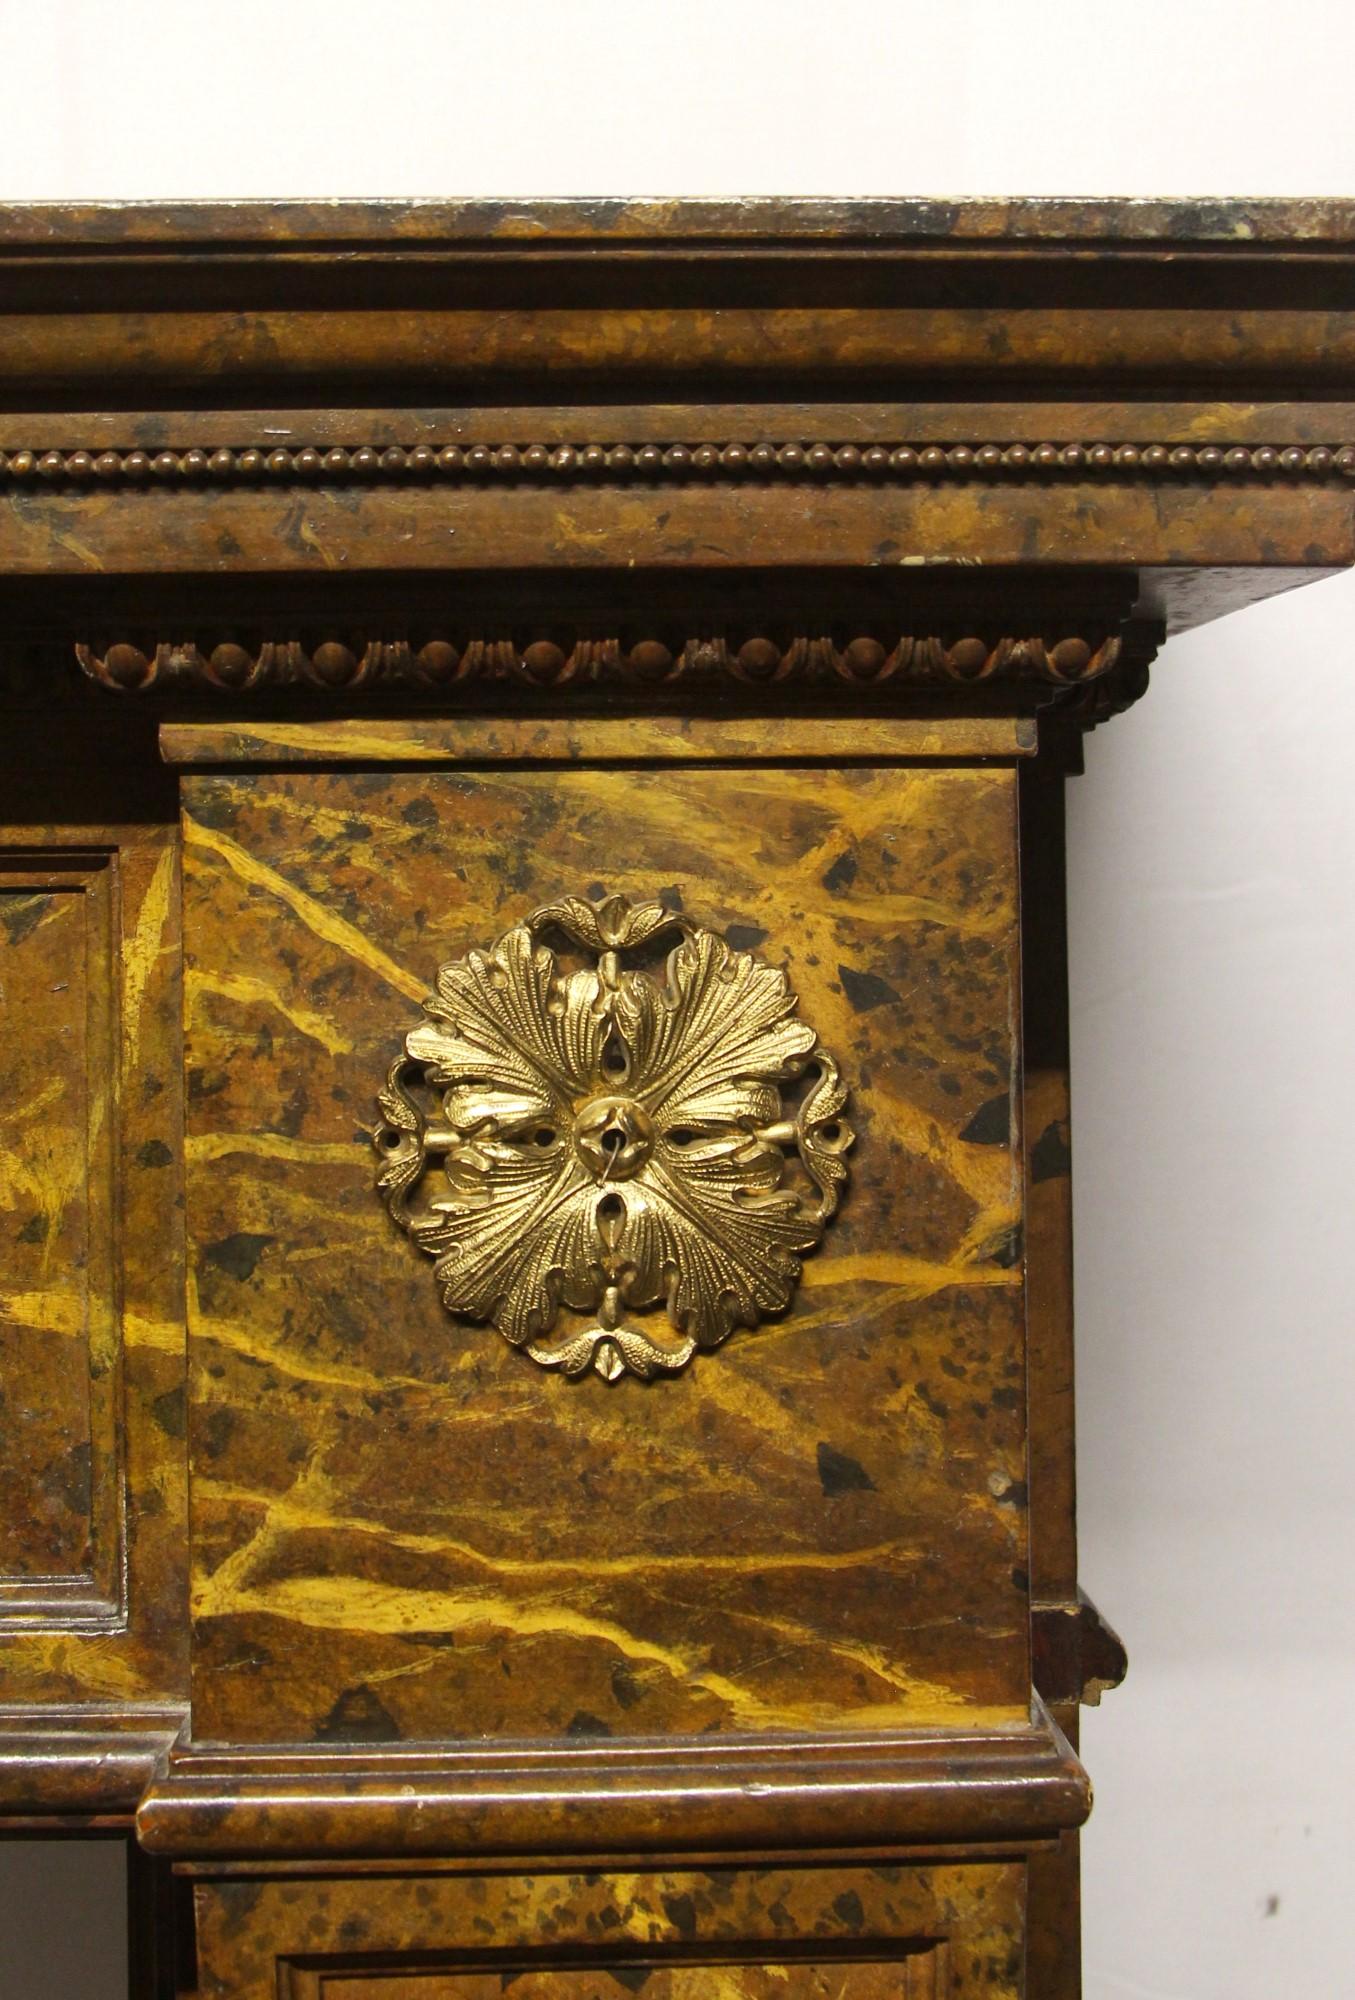 1910s Wood Regency Mantel Done in a Faux Marble Look 2 Brass Florets 1